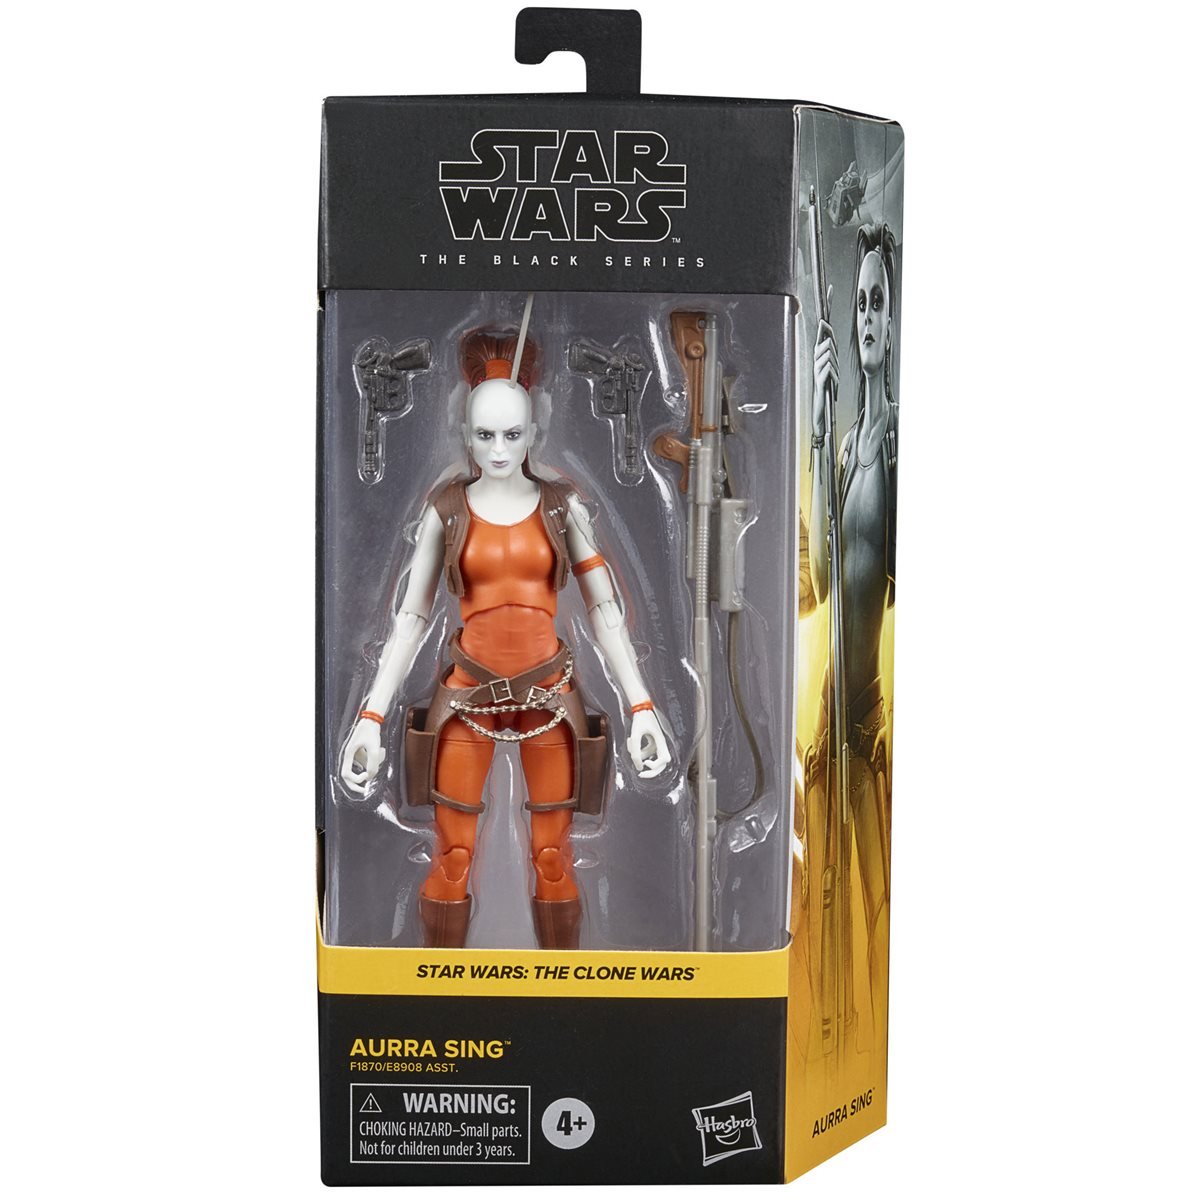 Hasbro Star Wars The Black Series The Clone Wars Aurra Sing figure in box packaging